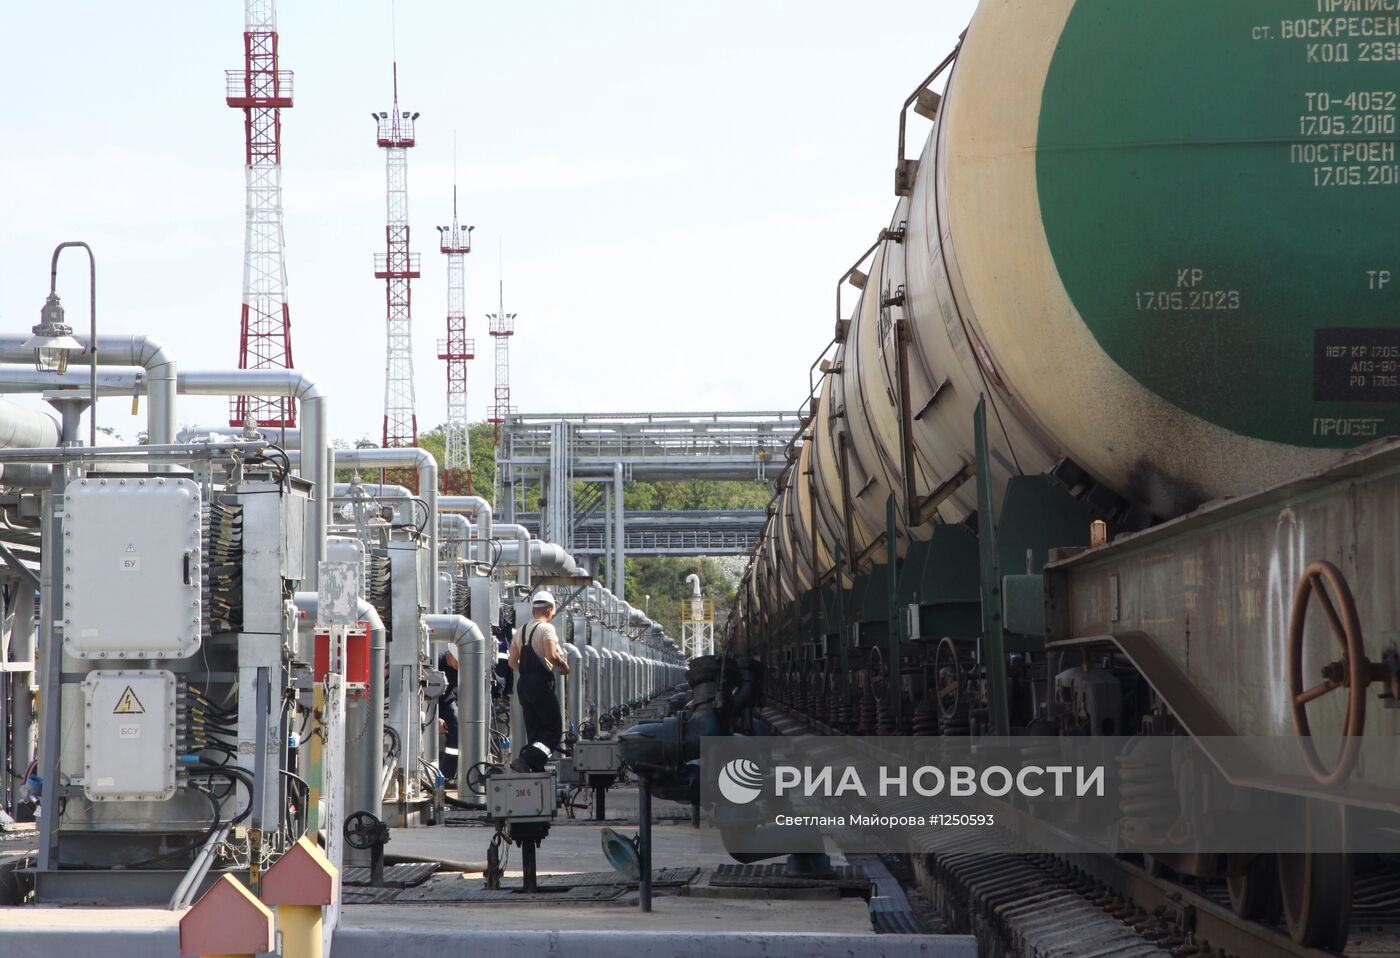 Нефтеналивной порт "Козьмино" в Приморском крае